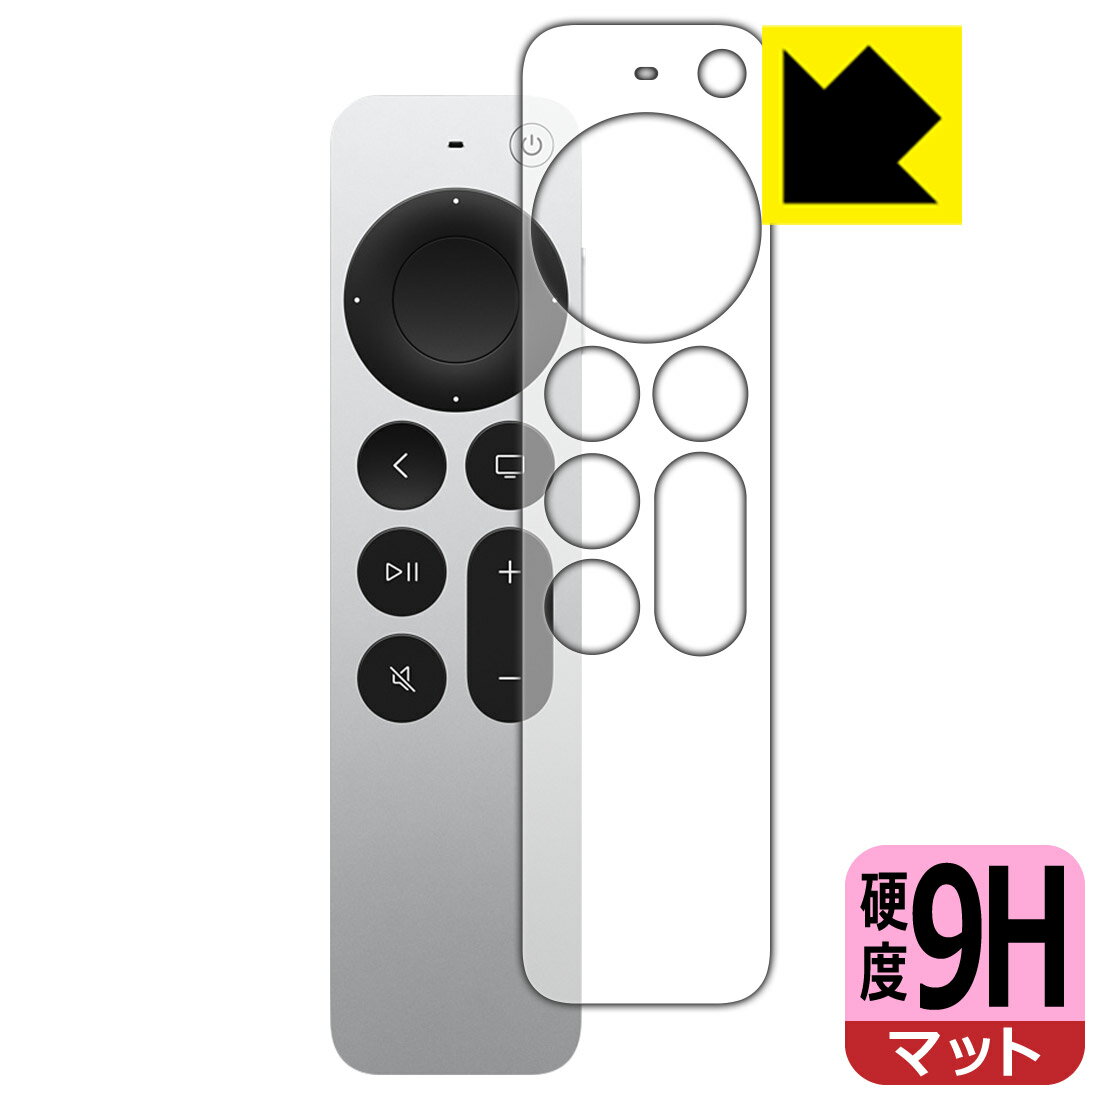 9H高硬度【反射低減】保護フィルム Siri Remote 第2世代 表面のみ 日本製 自社製造直販